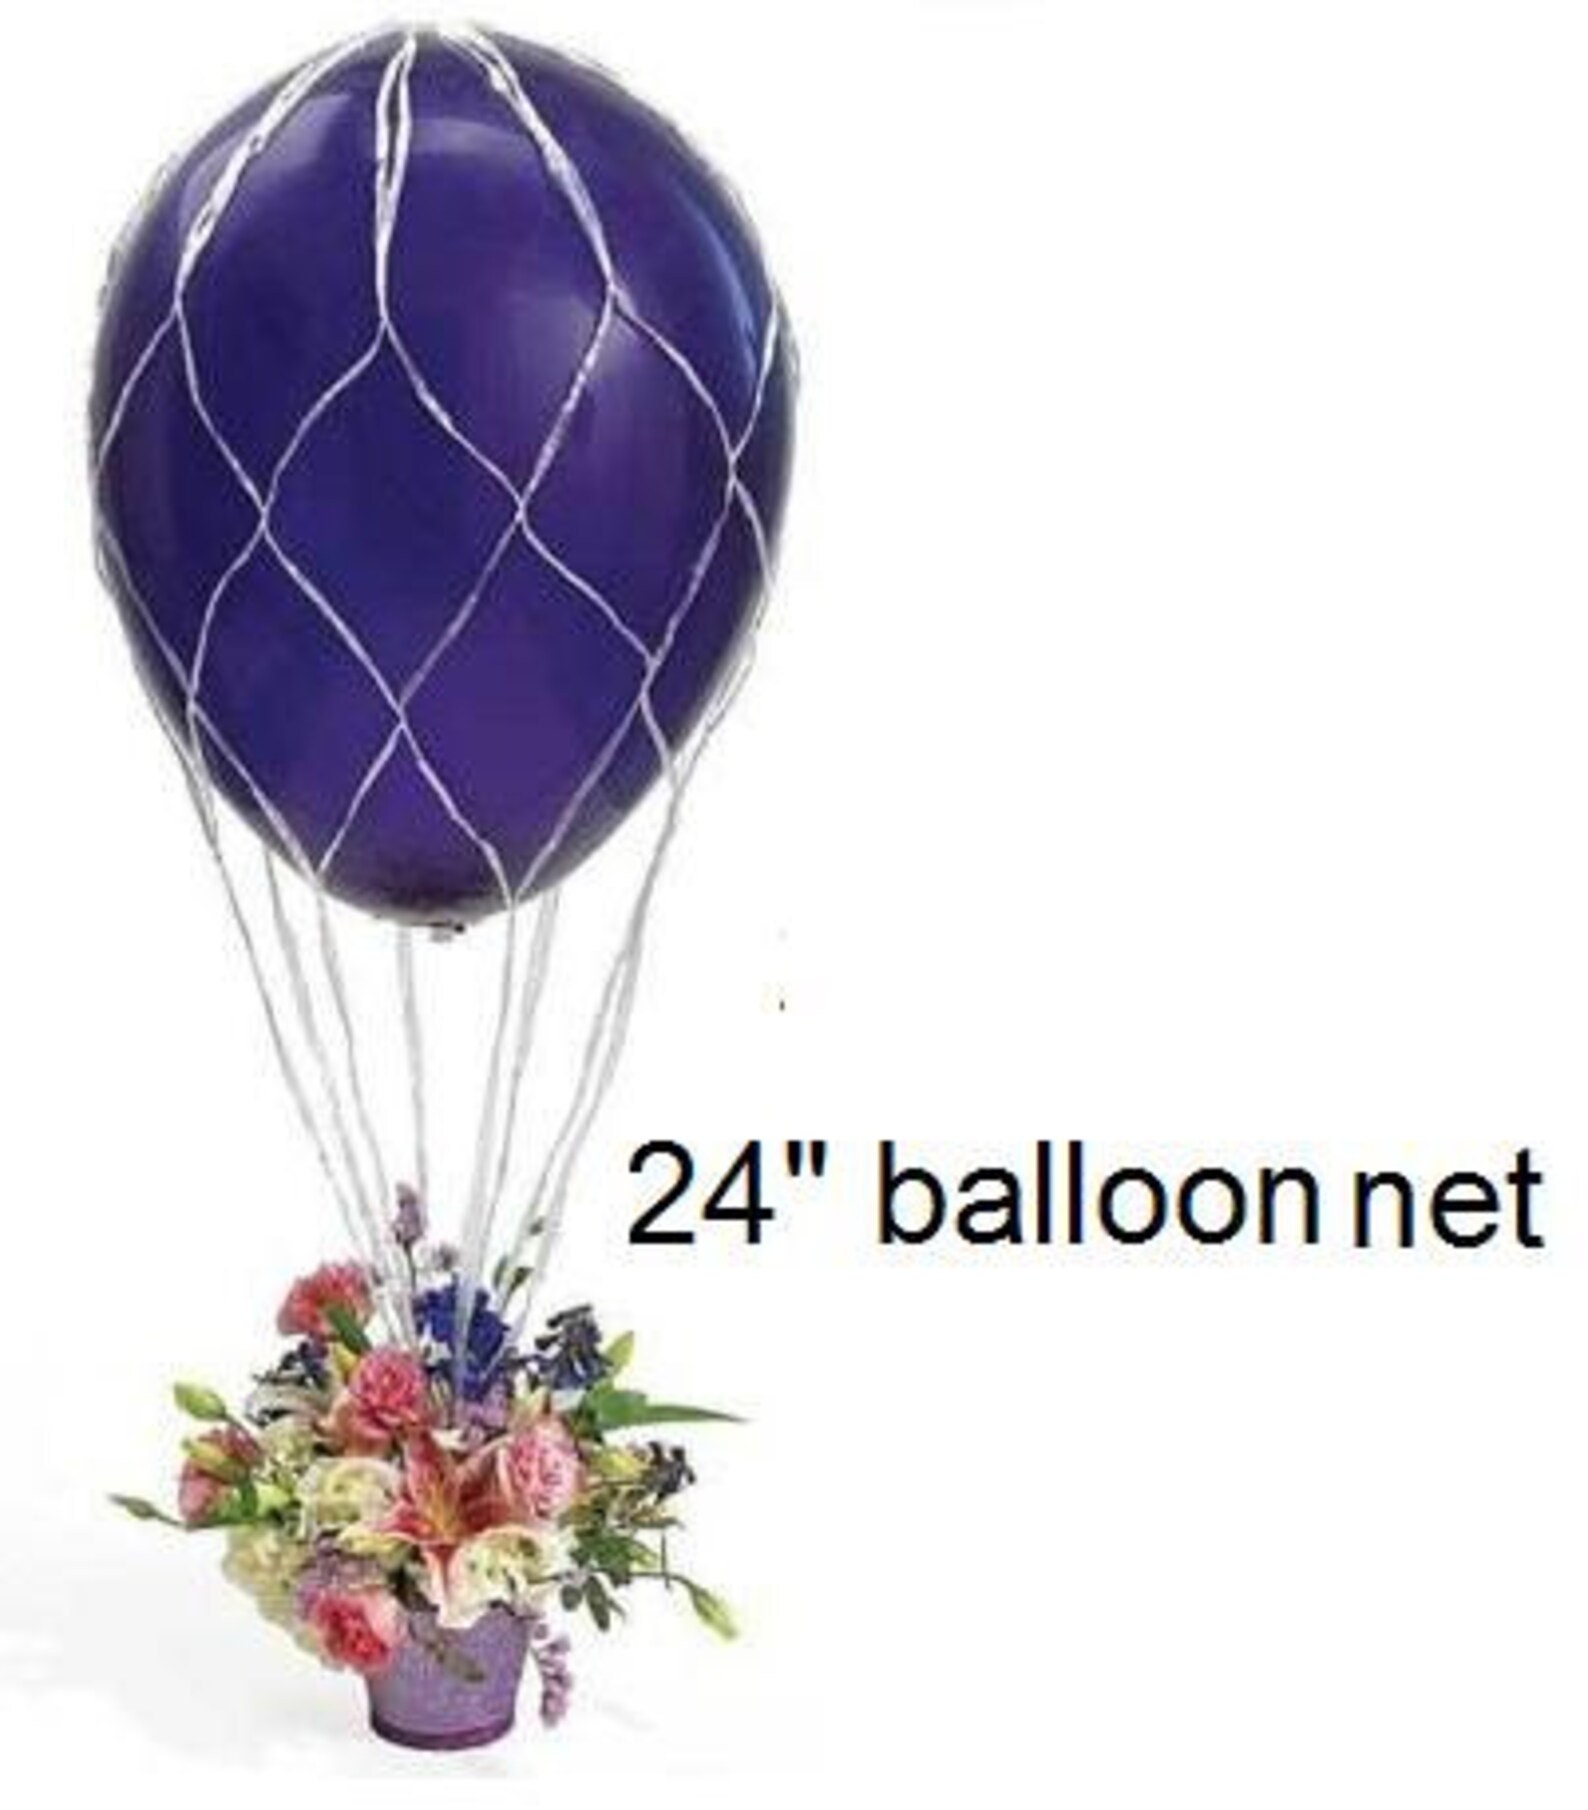 Balloon Net 